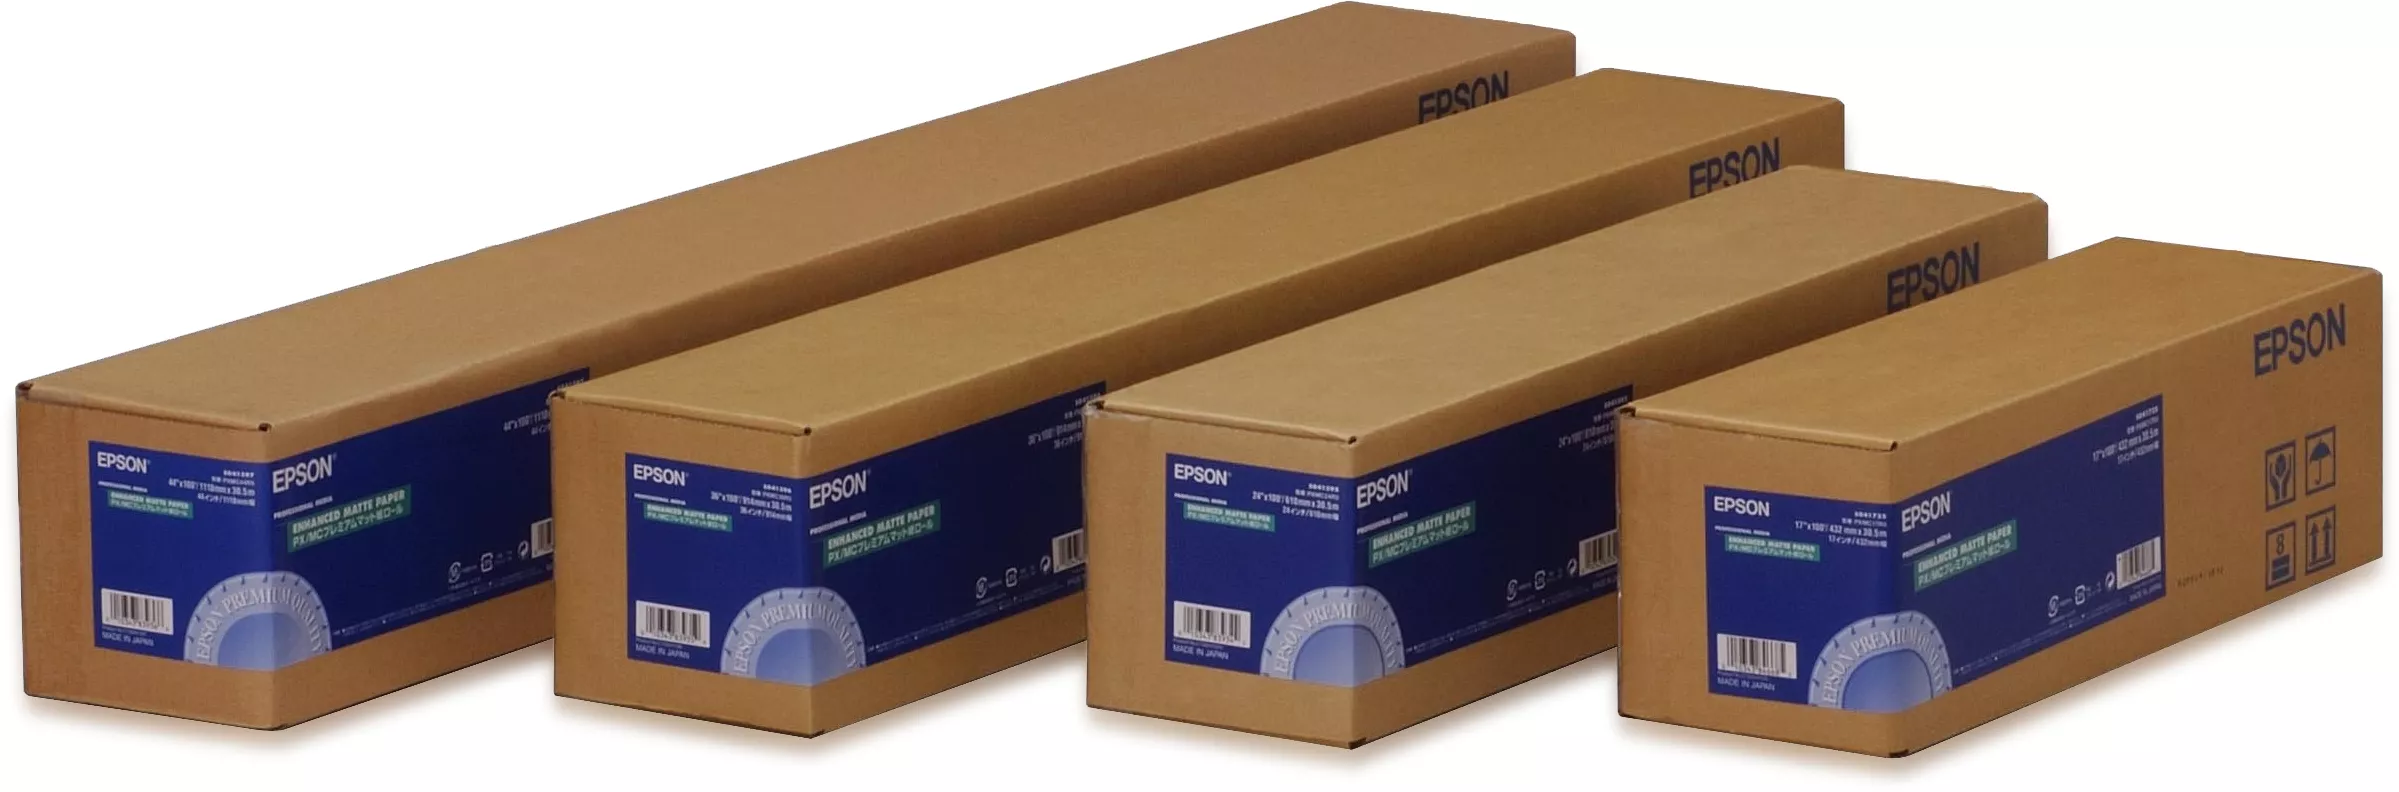 Achat EPSON Paper Mat Supérieur 189g 17pouce(0,432x30,5m et autres produits de la marque Epson